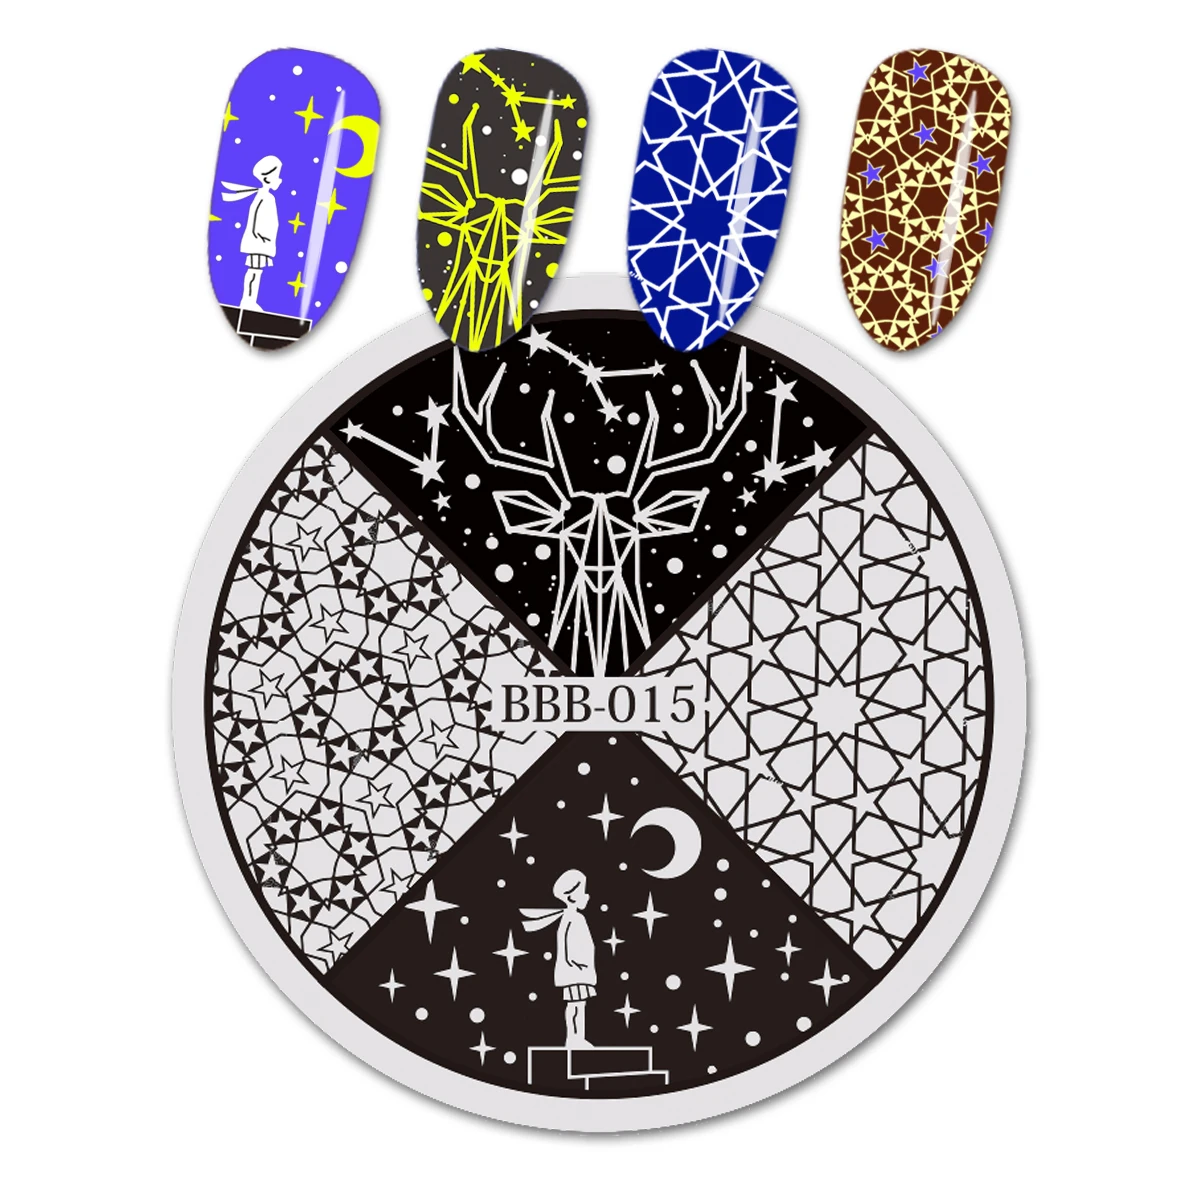 BeautyBigBang пластины для штамповки ногтей цветочный узор 5,6 см круглый из нержавеющей стали для печатей лаком для ногтей трафареты для дизайна ногтей BBB-020